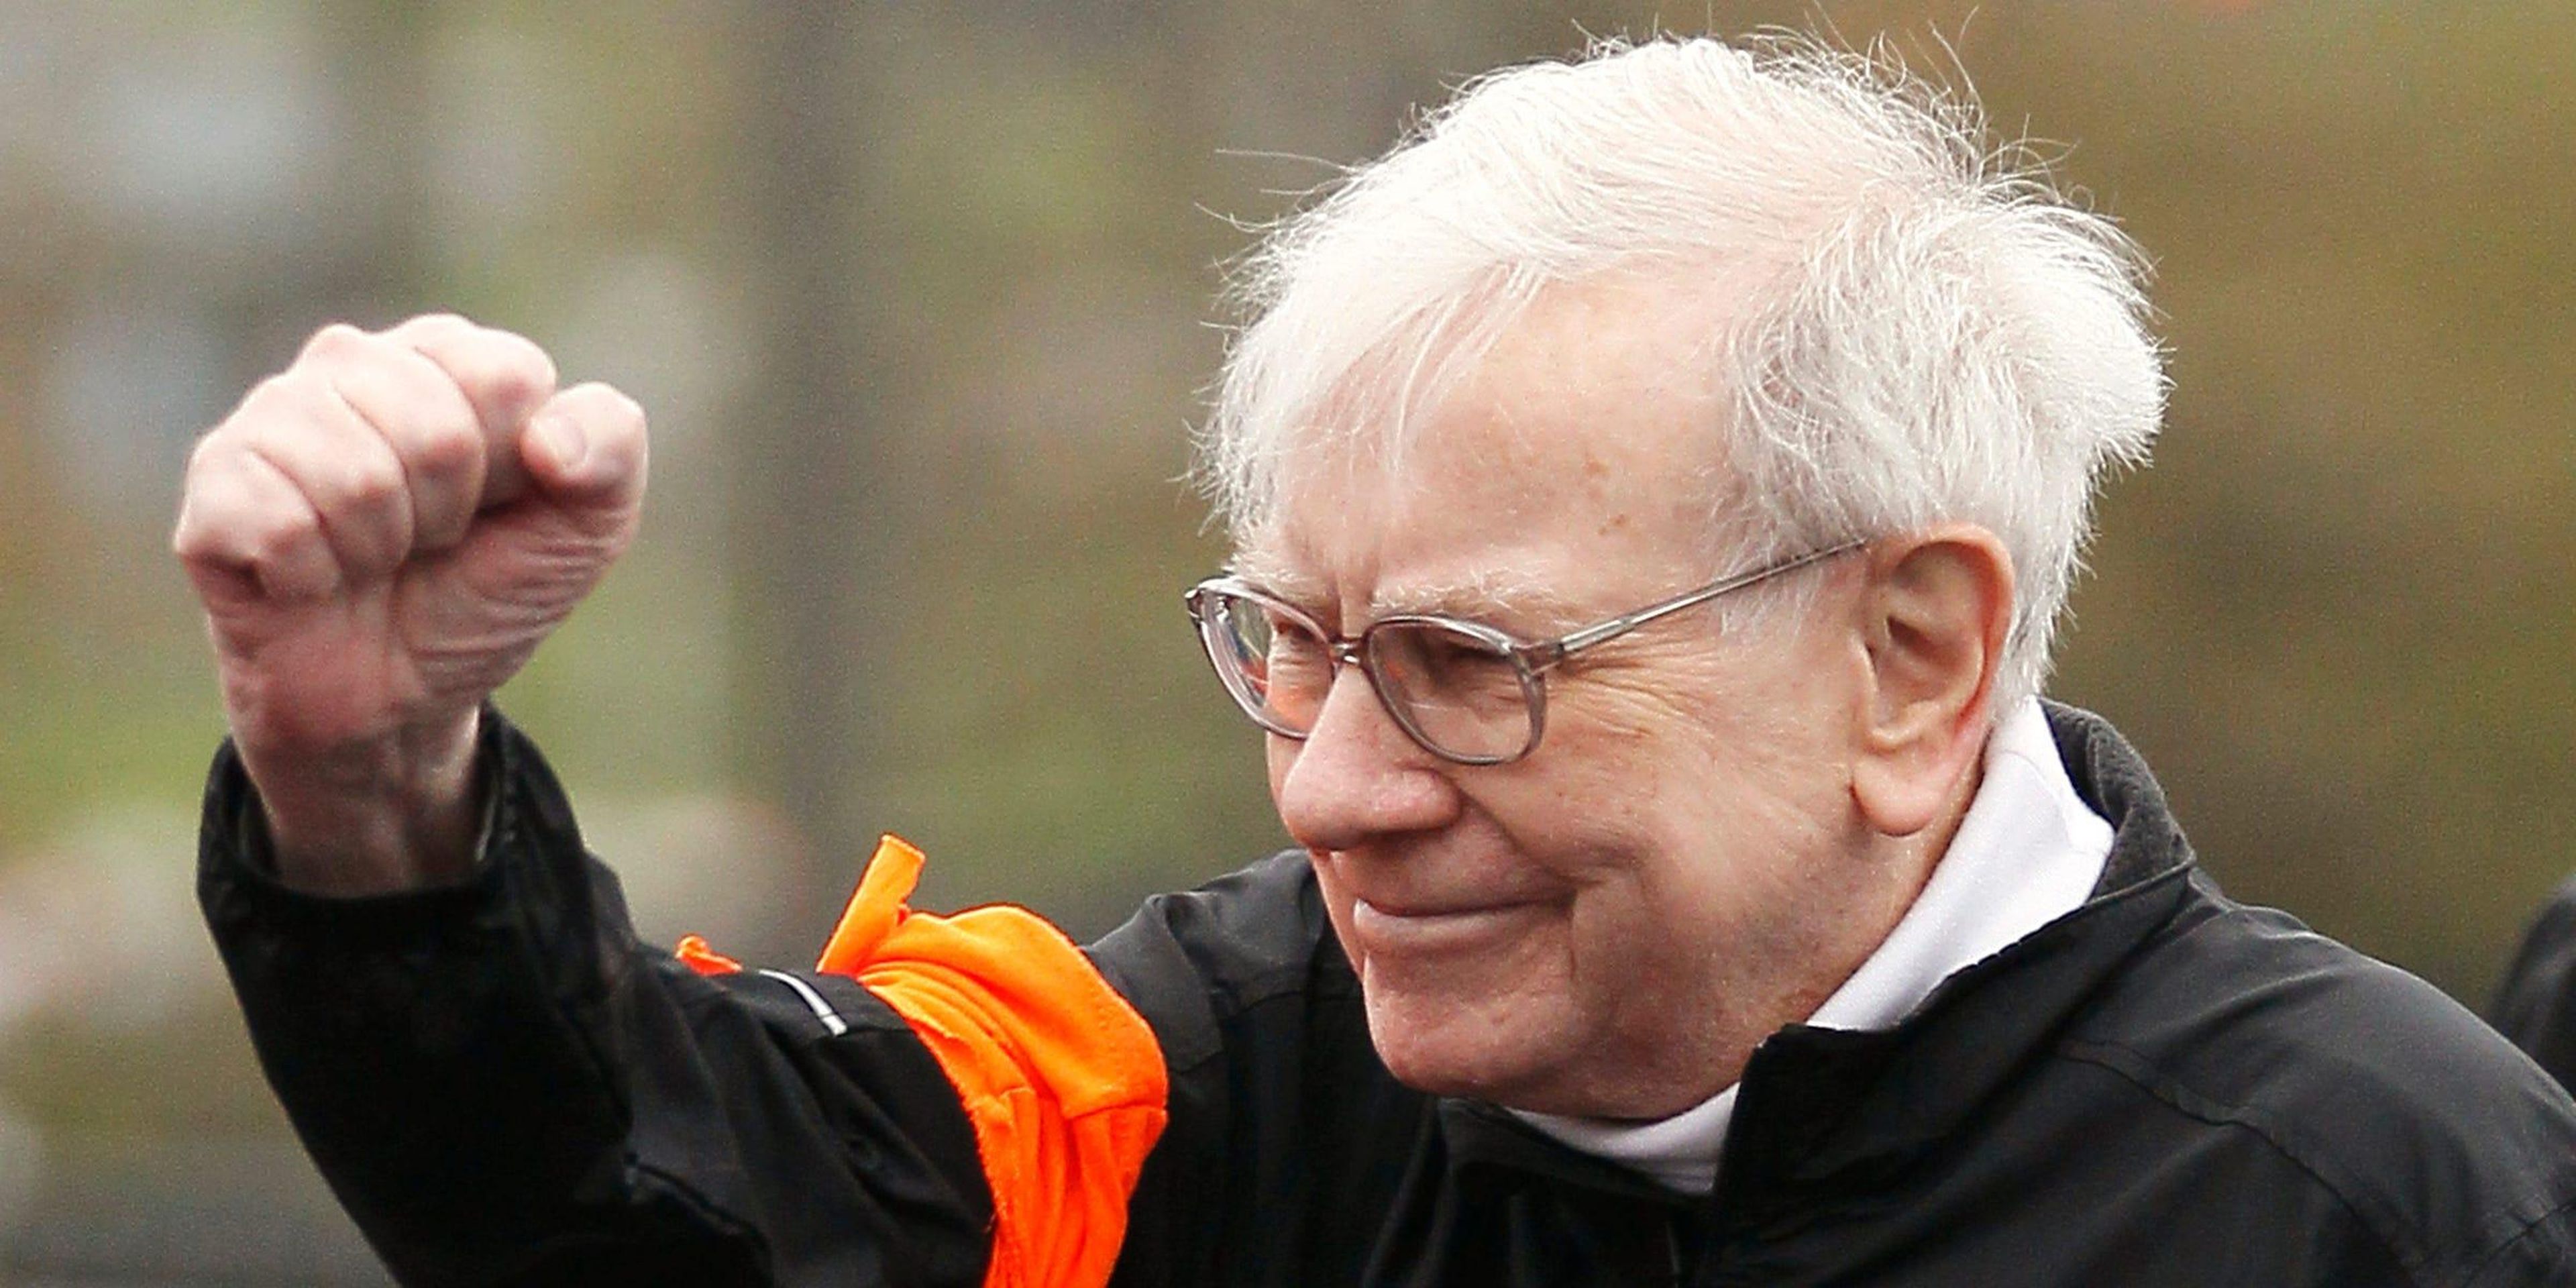 Berkshire Hathaway chairman Warren Buffett gestures at the start of a 5km race. REUTERS/Rick Wilking